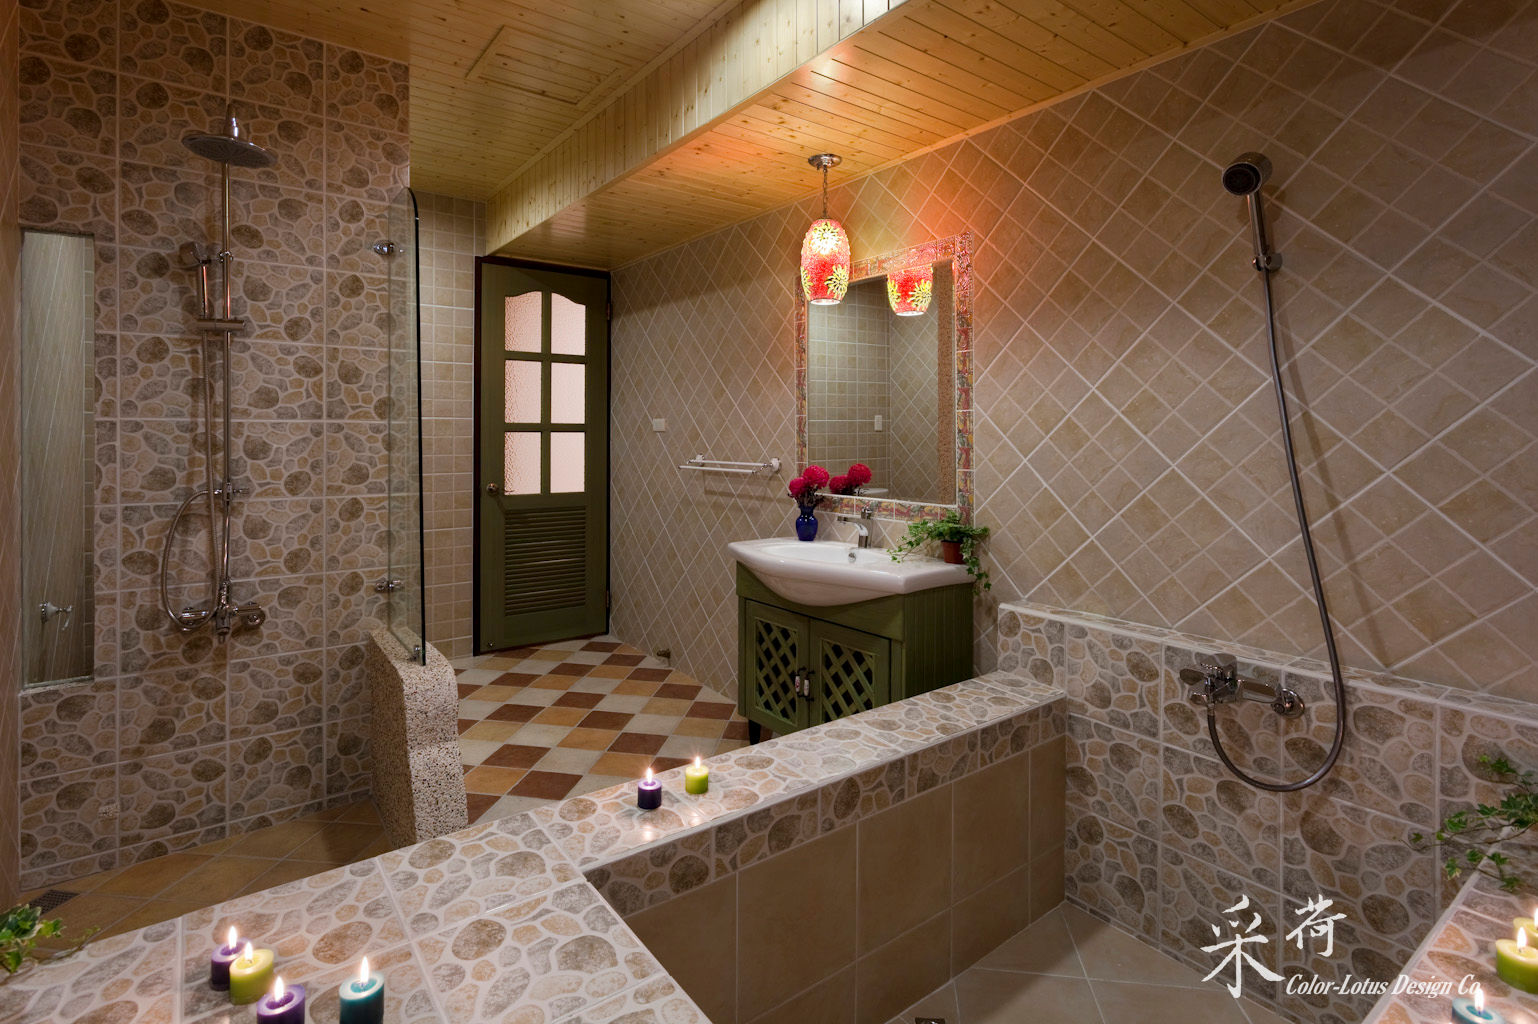 華麗復古，法式鄉村 , Color-Lotus Design Color-Lotus Design 浴室 磁磚 财产,建造,植物,室内设计,地板,地面,木头,室内植物,镜框,客厅